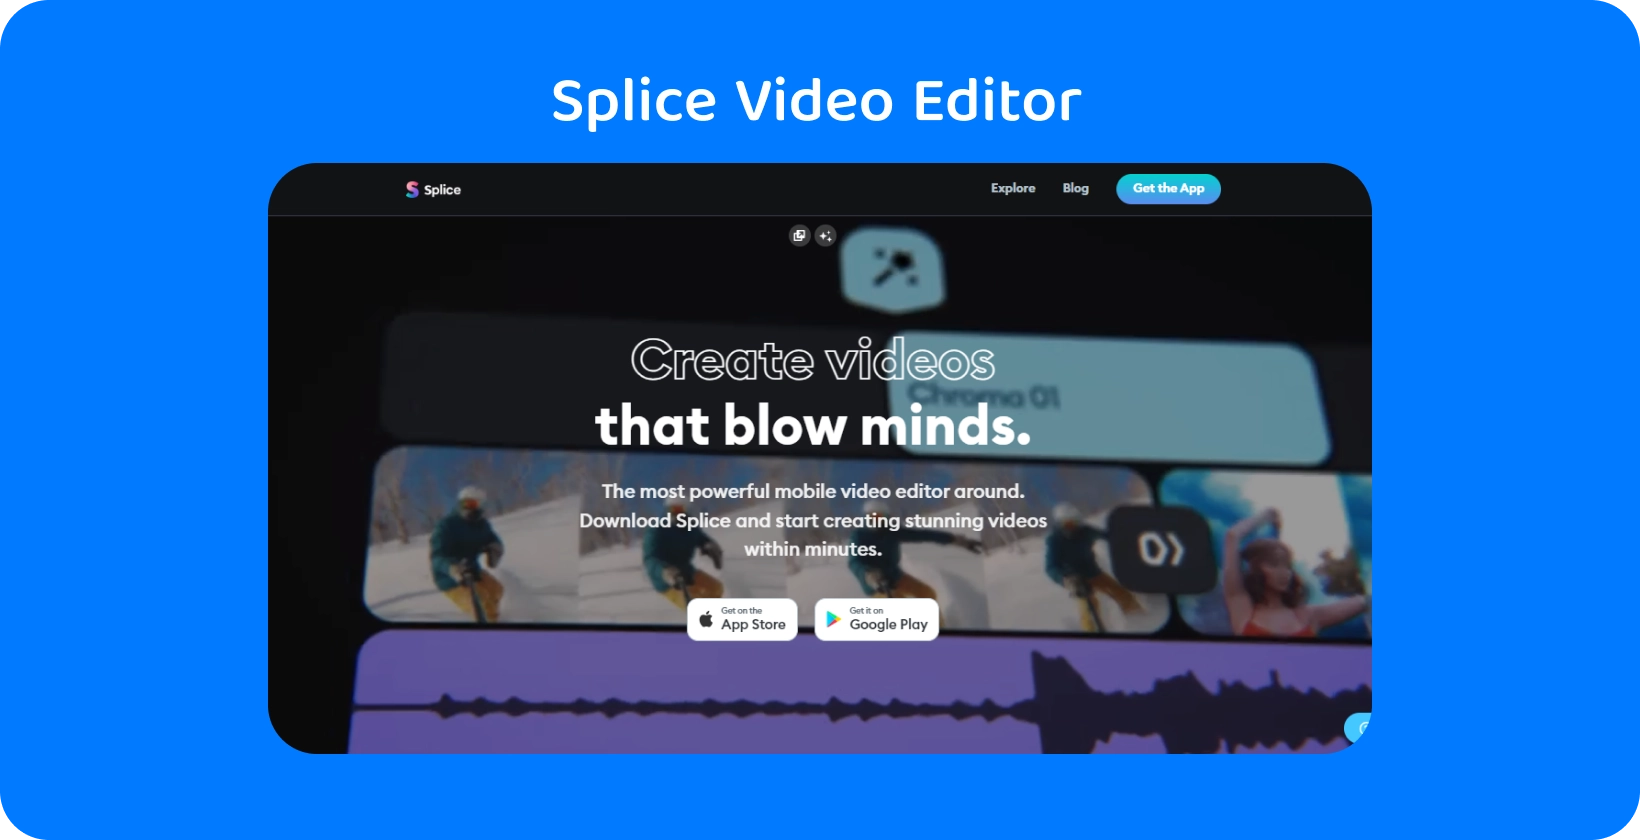 Splice promoção de aplicativos em um smartphone, anunciando-o como o editor de vídeo móvel mais poderoso para criar vídeos impressionantes.